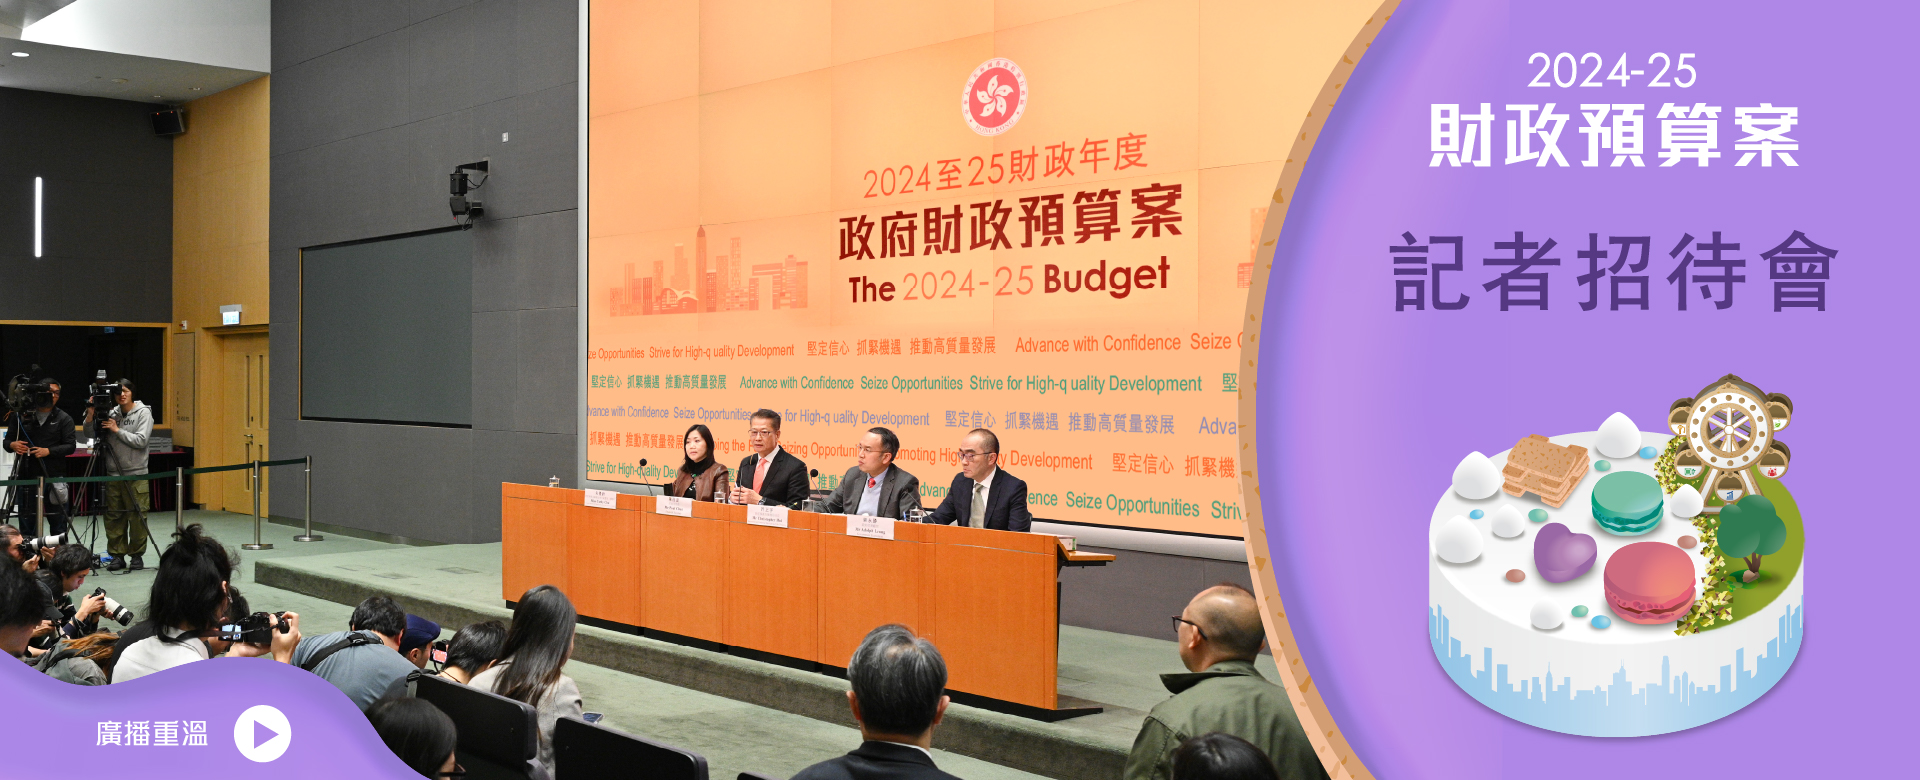 2024-25 財政預算案記者招待會重溫